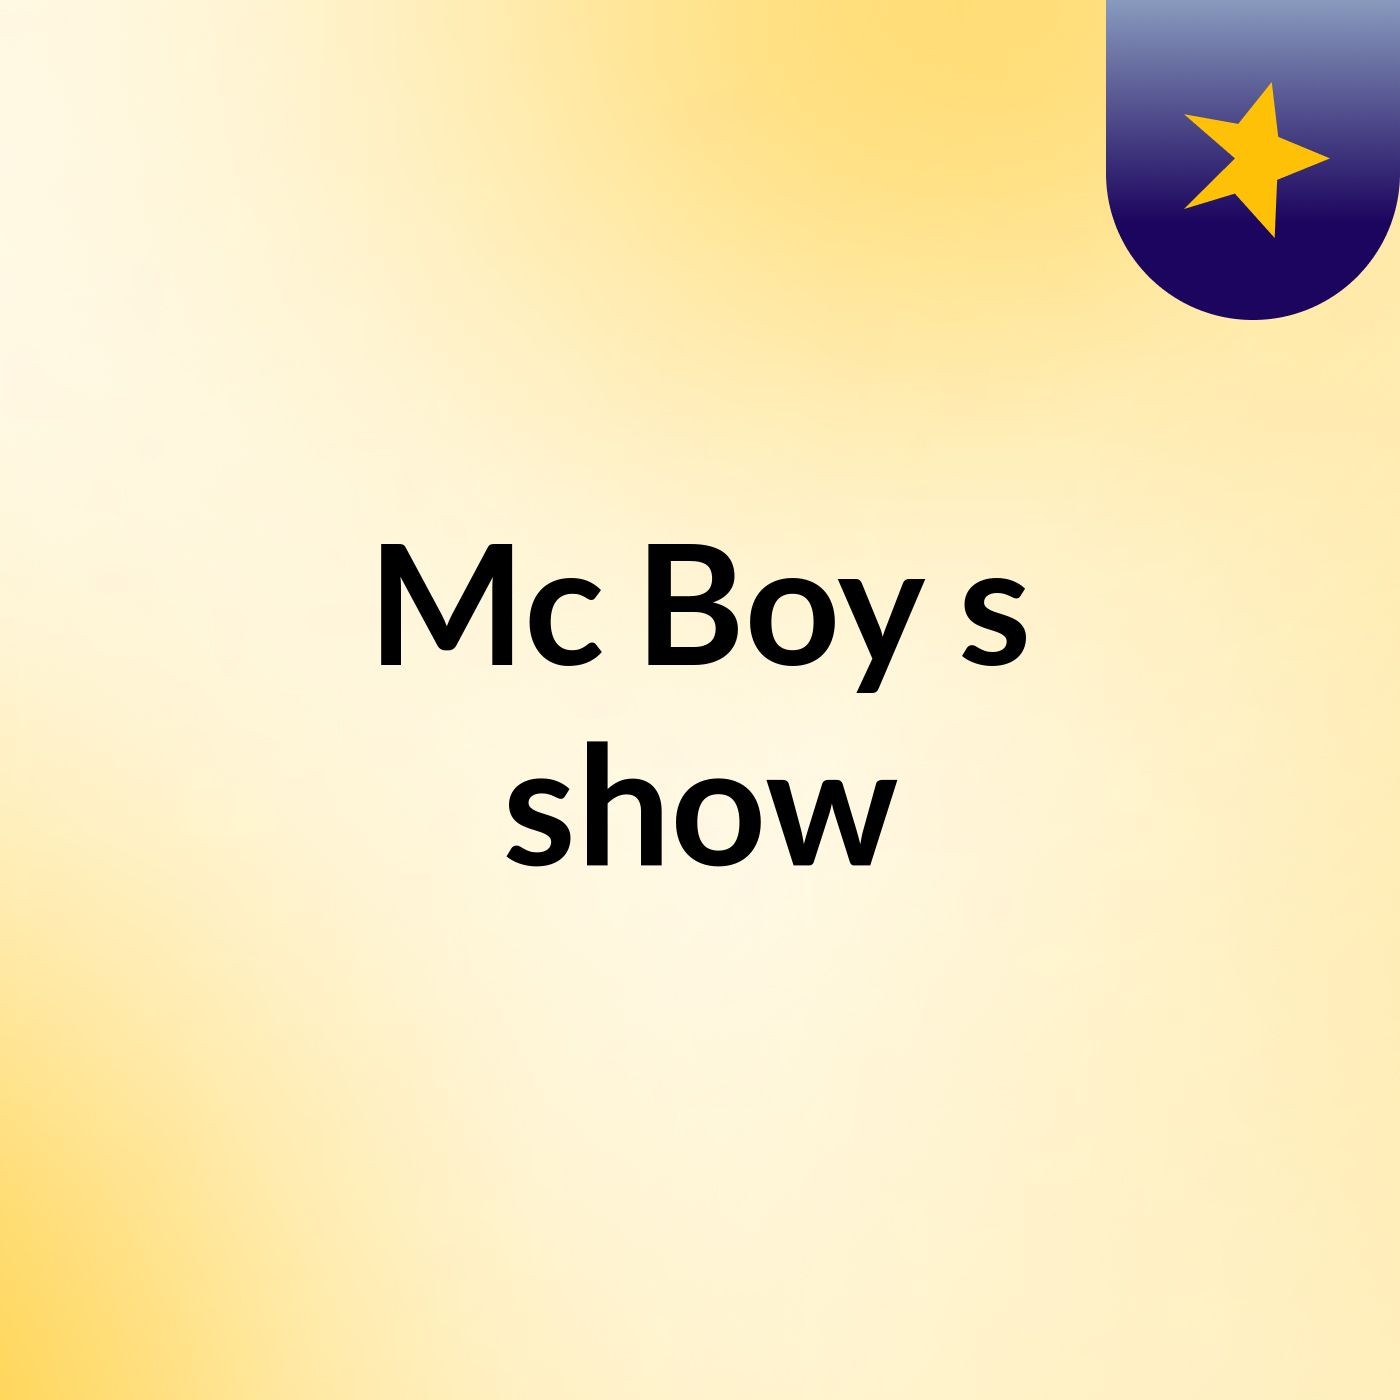 Mc Boy's show